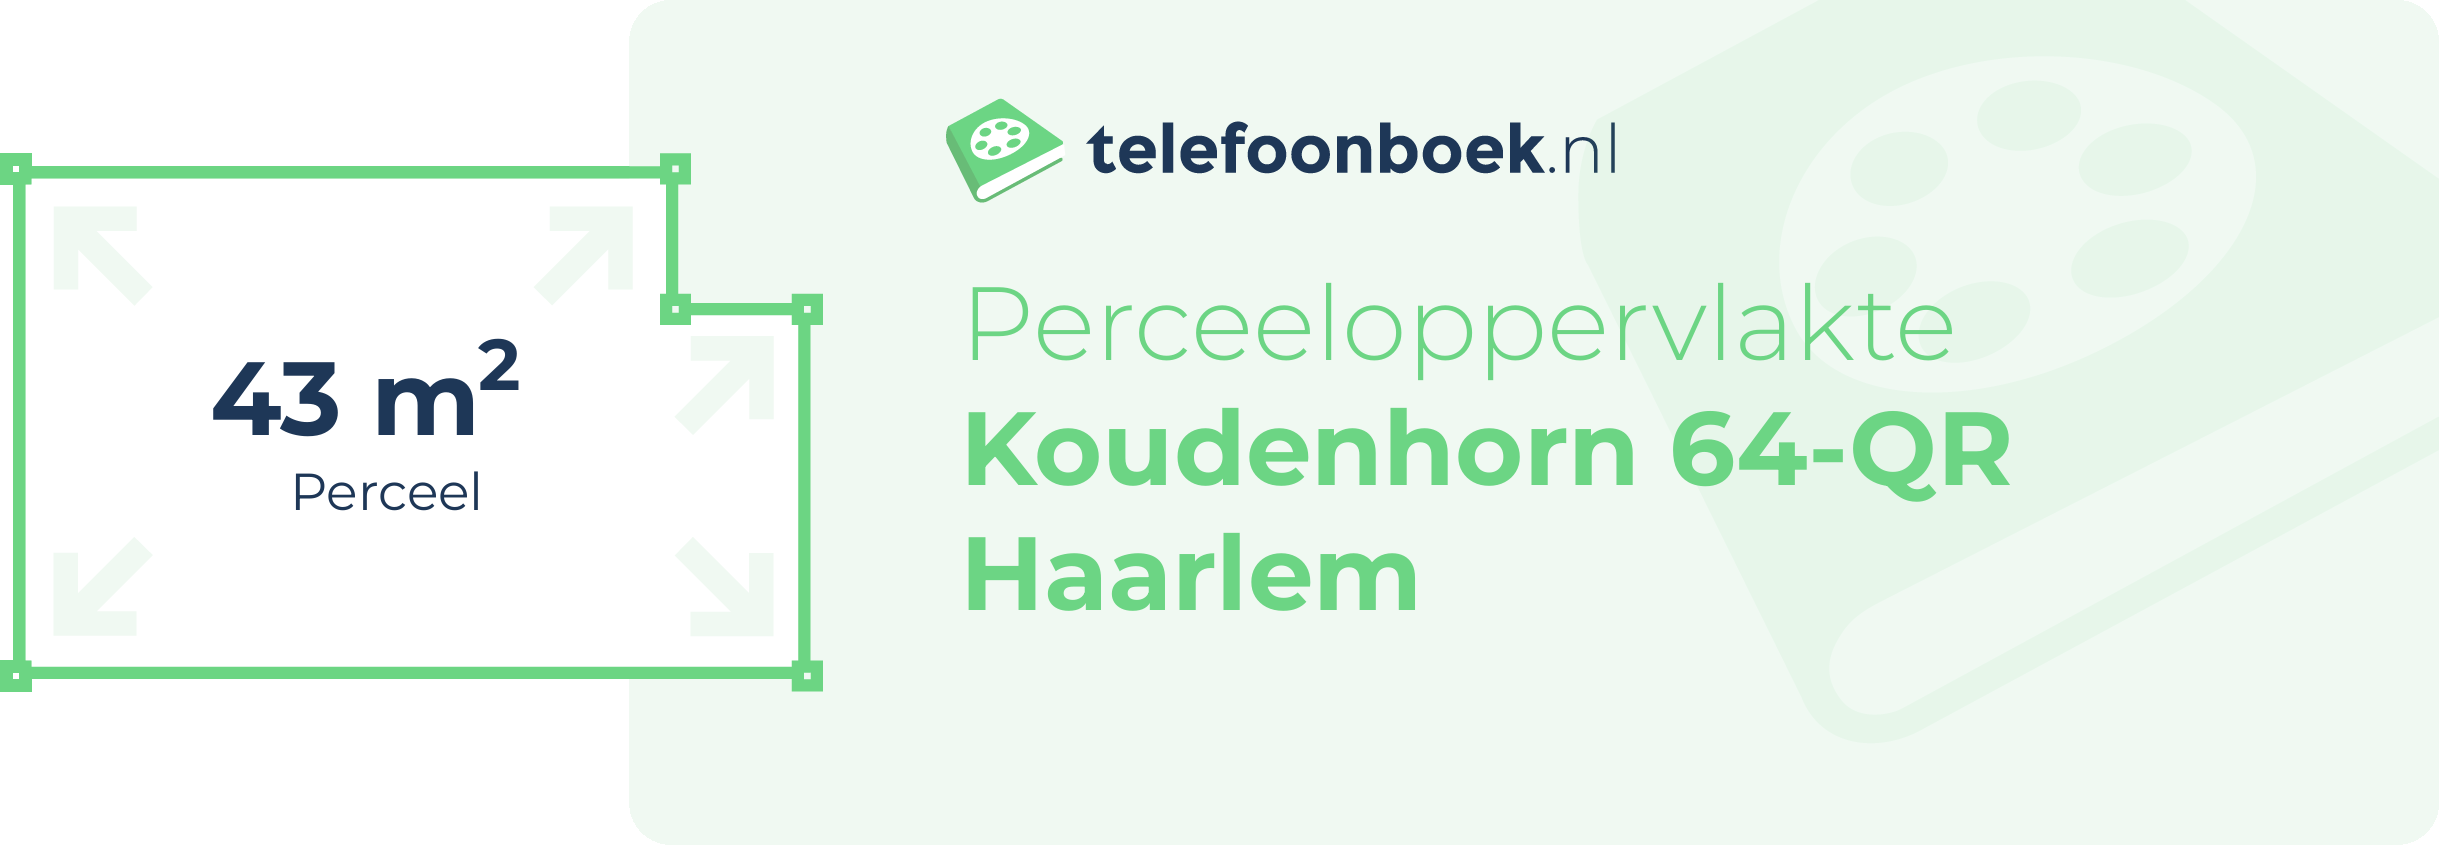 Perceeloppervlakte Koudenhorn 64-QR Haarlem